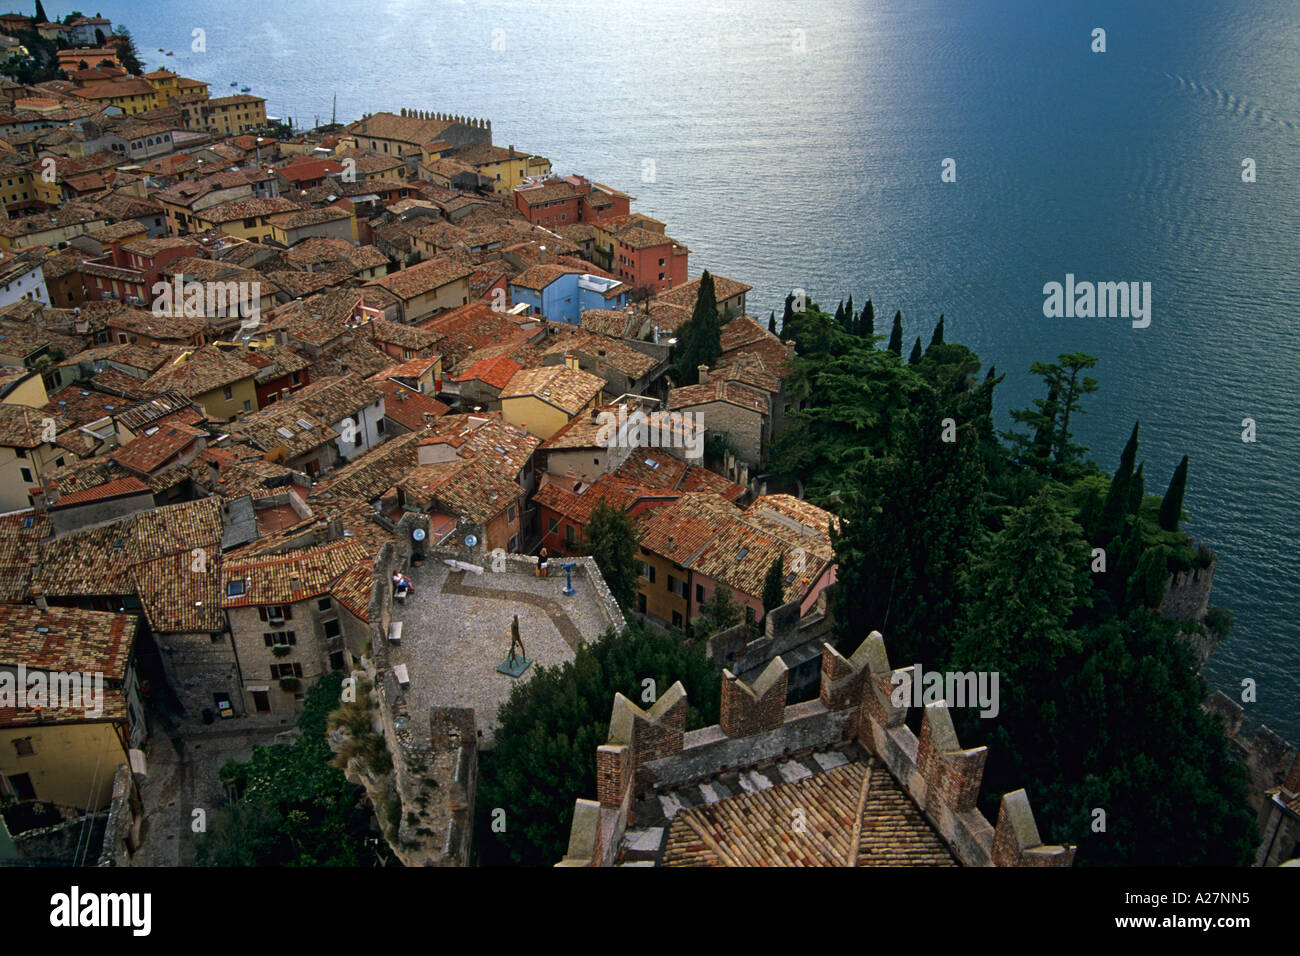 Rooftops of Malcesine, Lake Garda, Italy Stock Photo